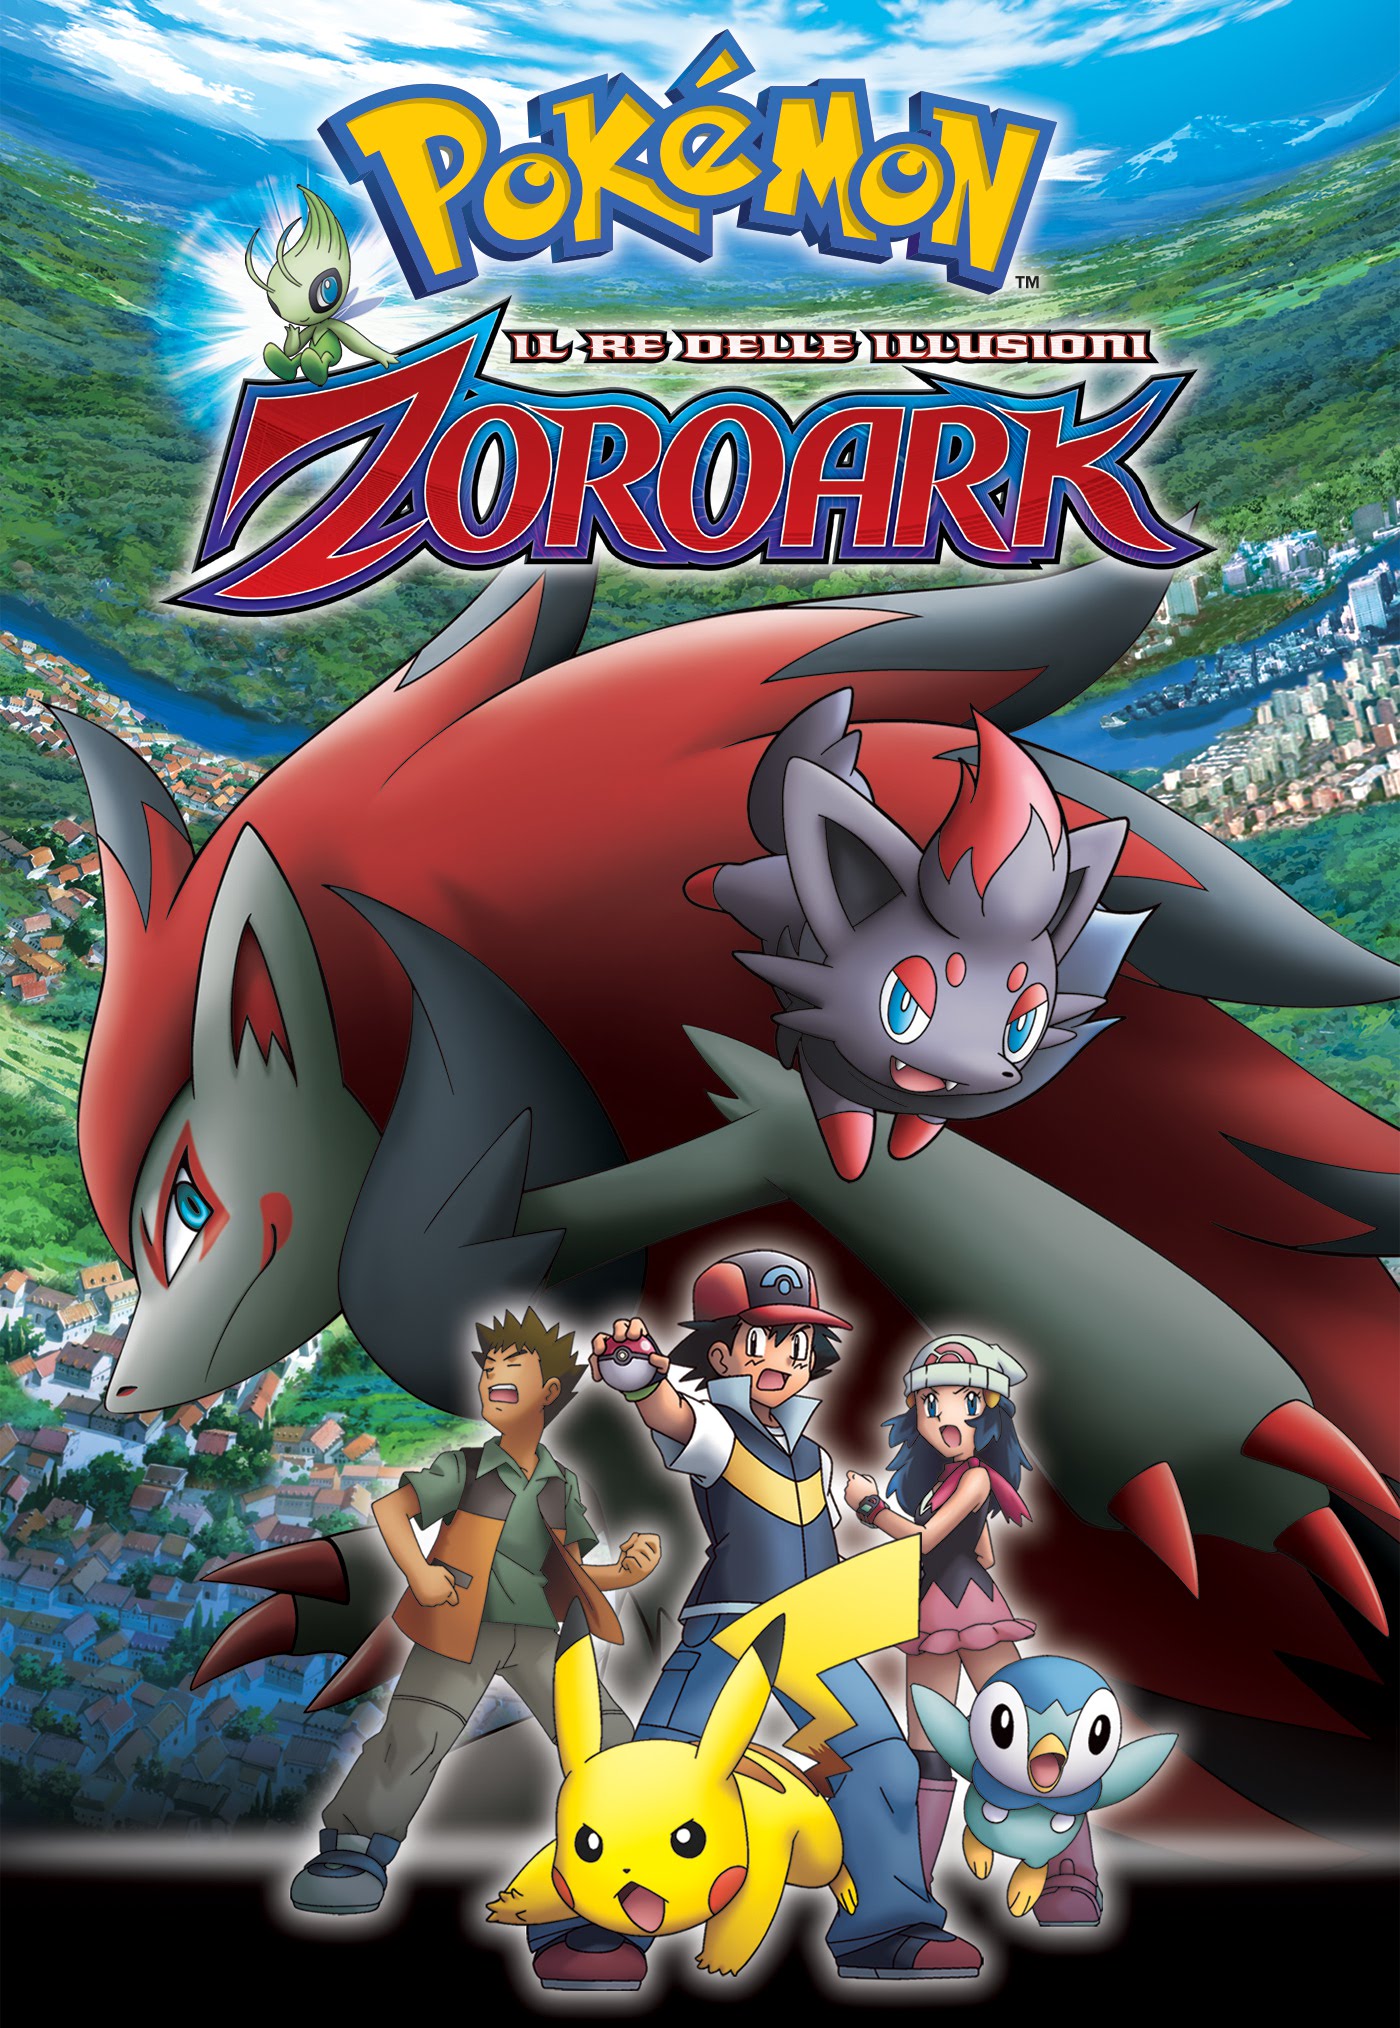 Pokémon: Il re delle illusioni Zoroark [HD] (2011)